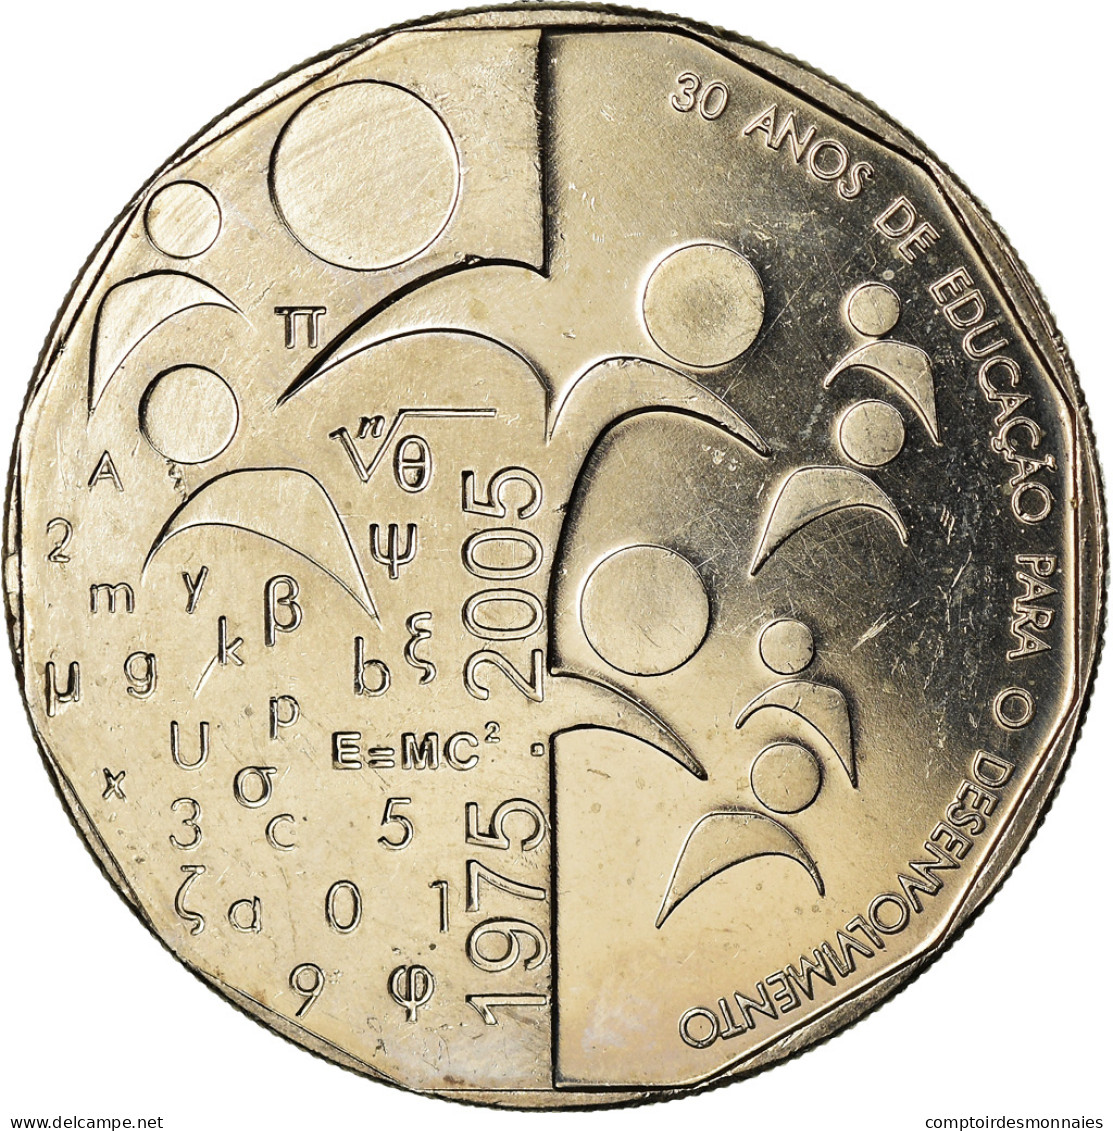 Monnaie, Cape Verde, 200 Escudos, 2005, 30 Ans De L'Indépendance, SPL - Cape Verde